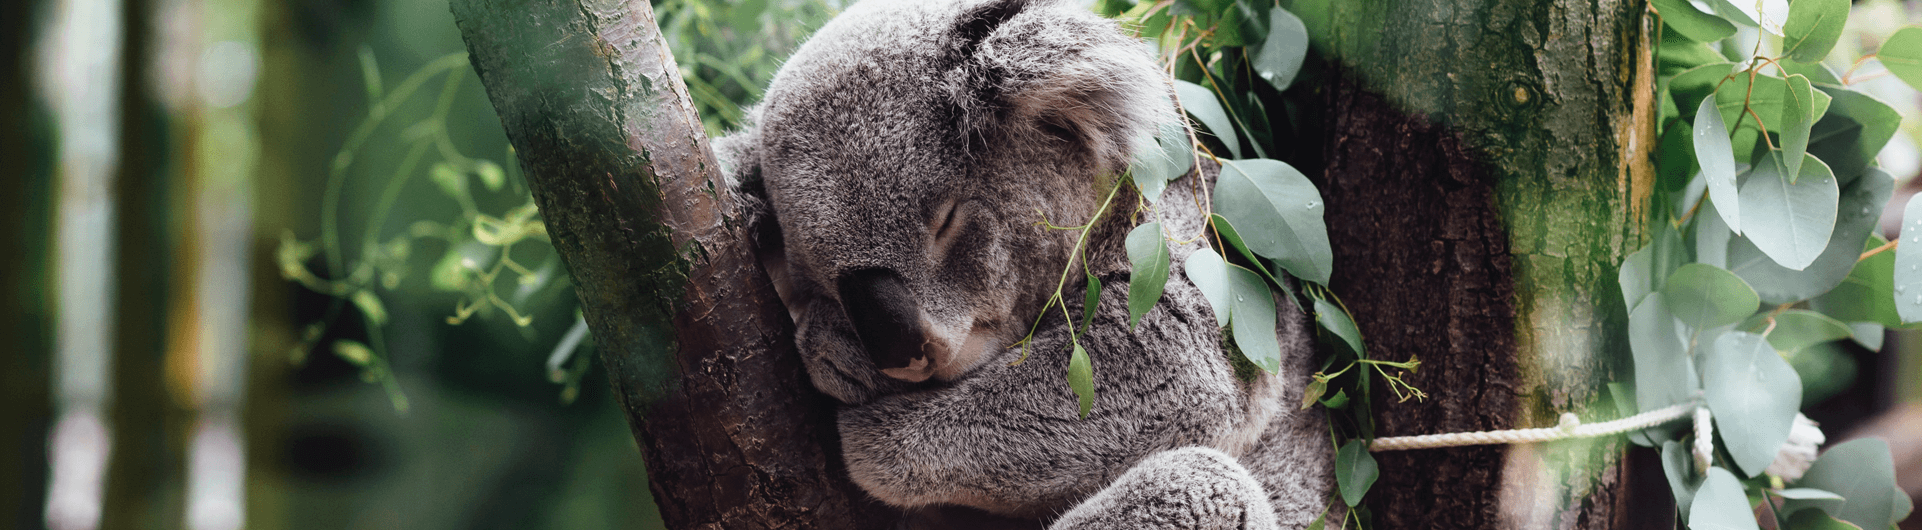 Artículo Koala CRM